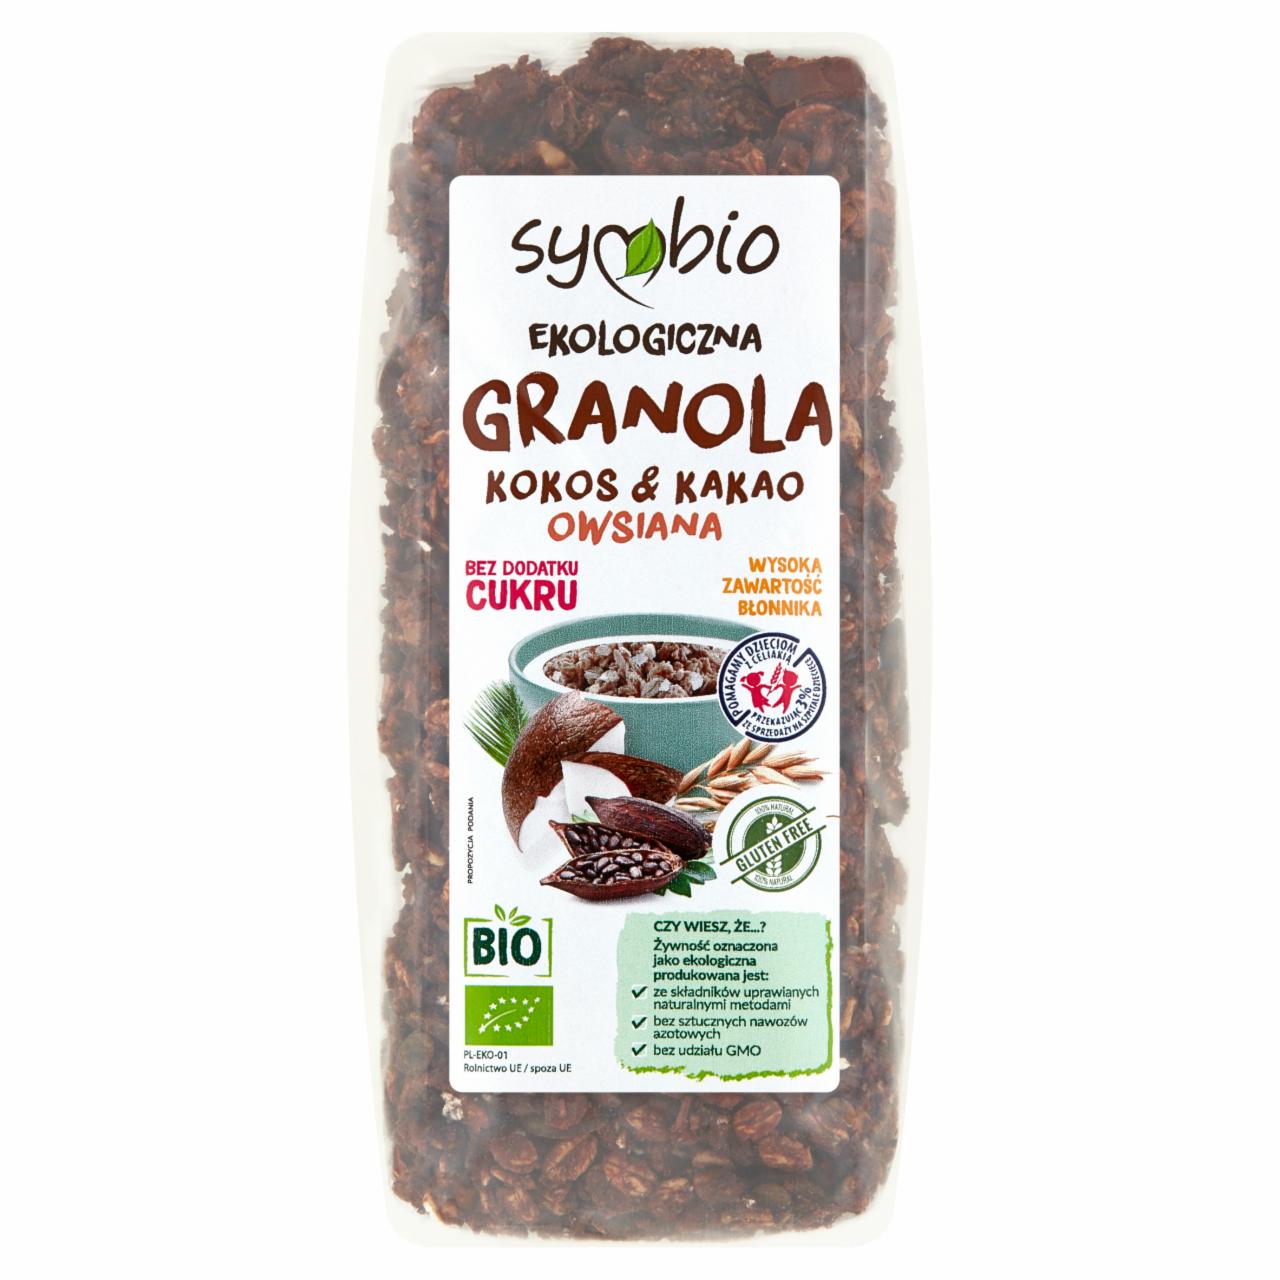 Zdjęcia - Symbio Ekologiczna granola owsiana kokos & kakao 350 g